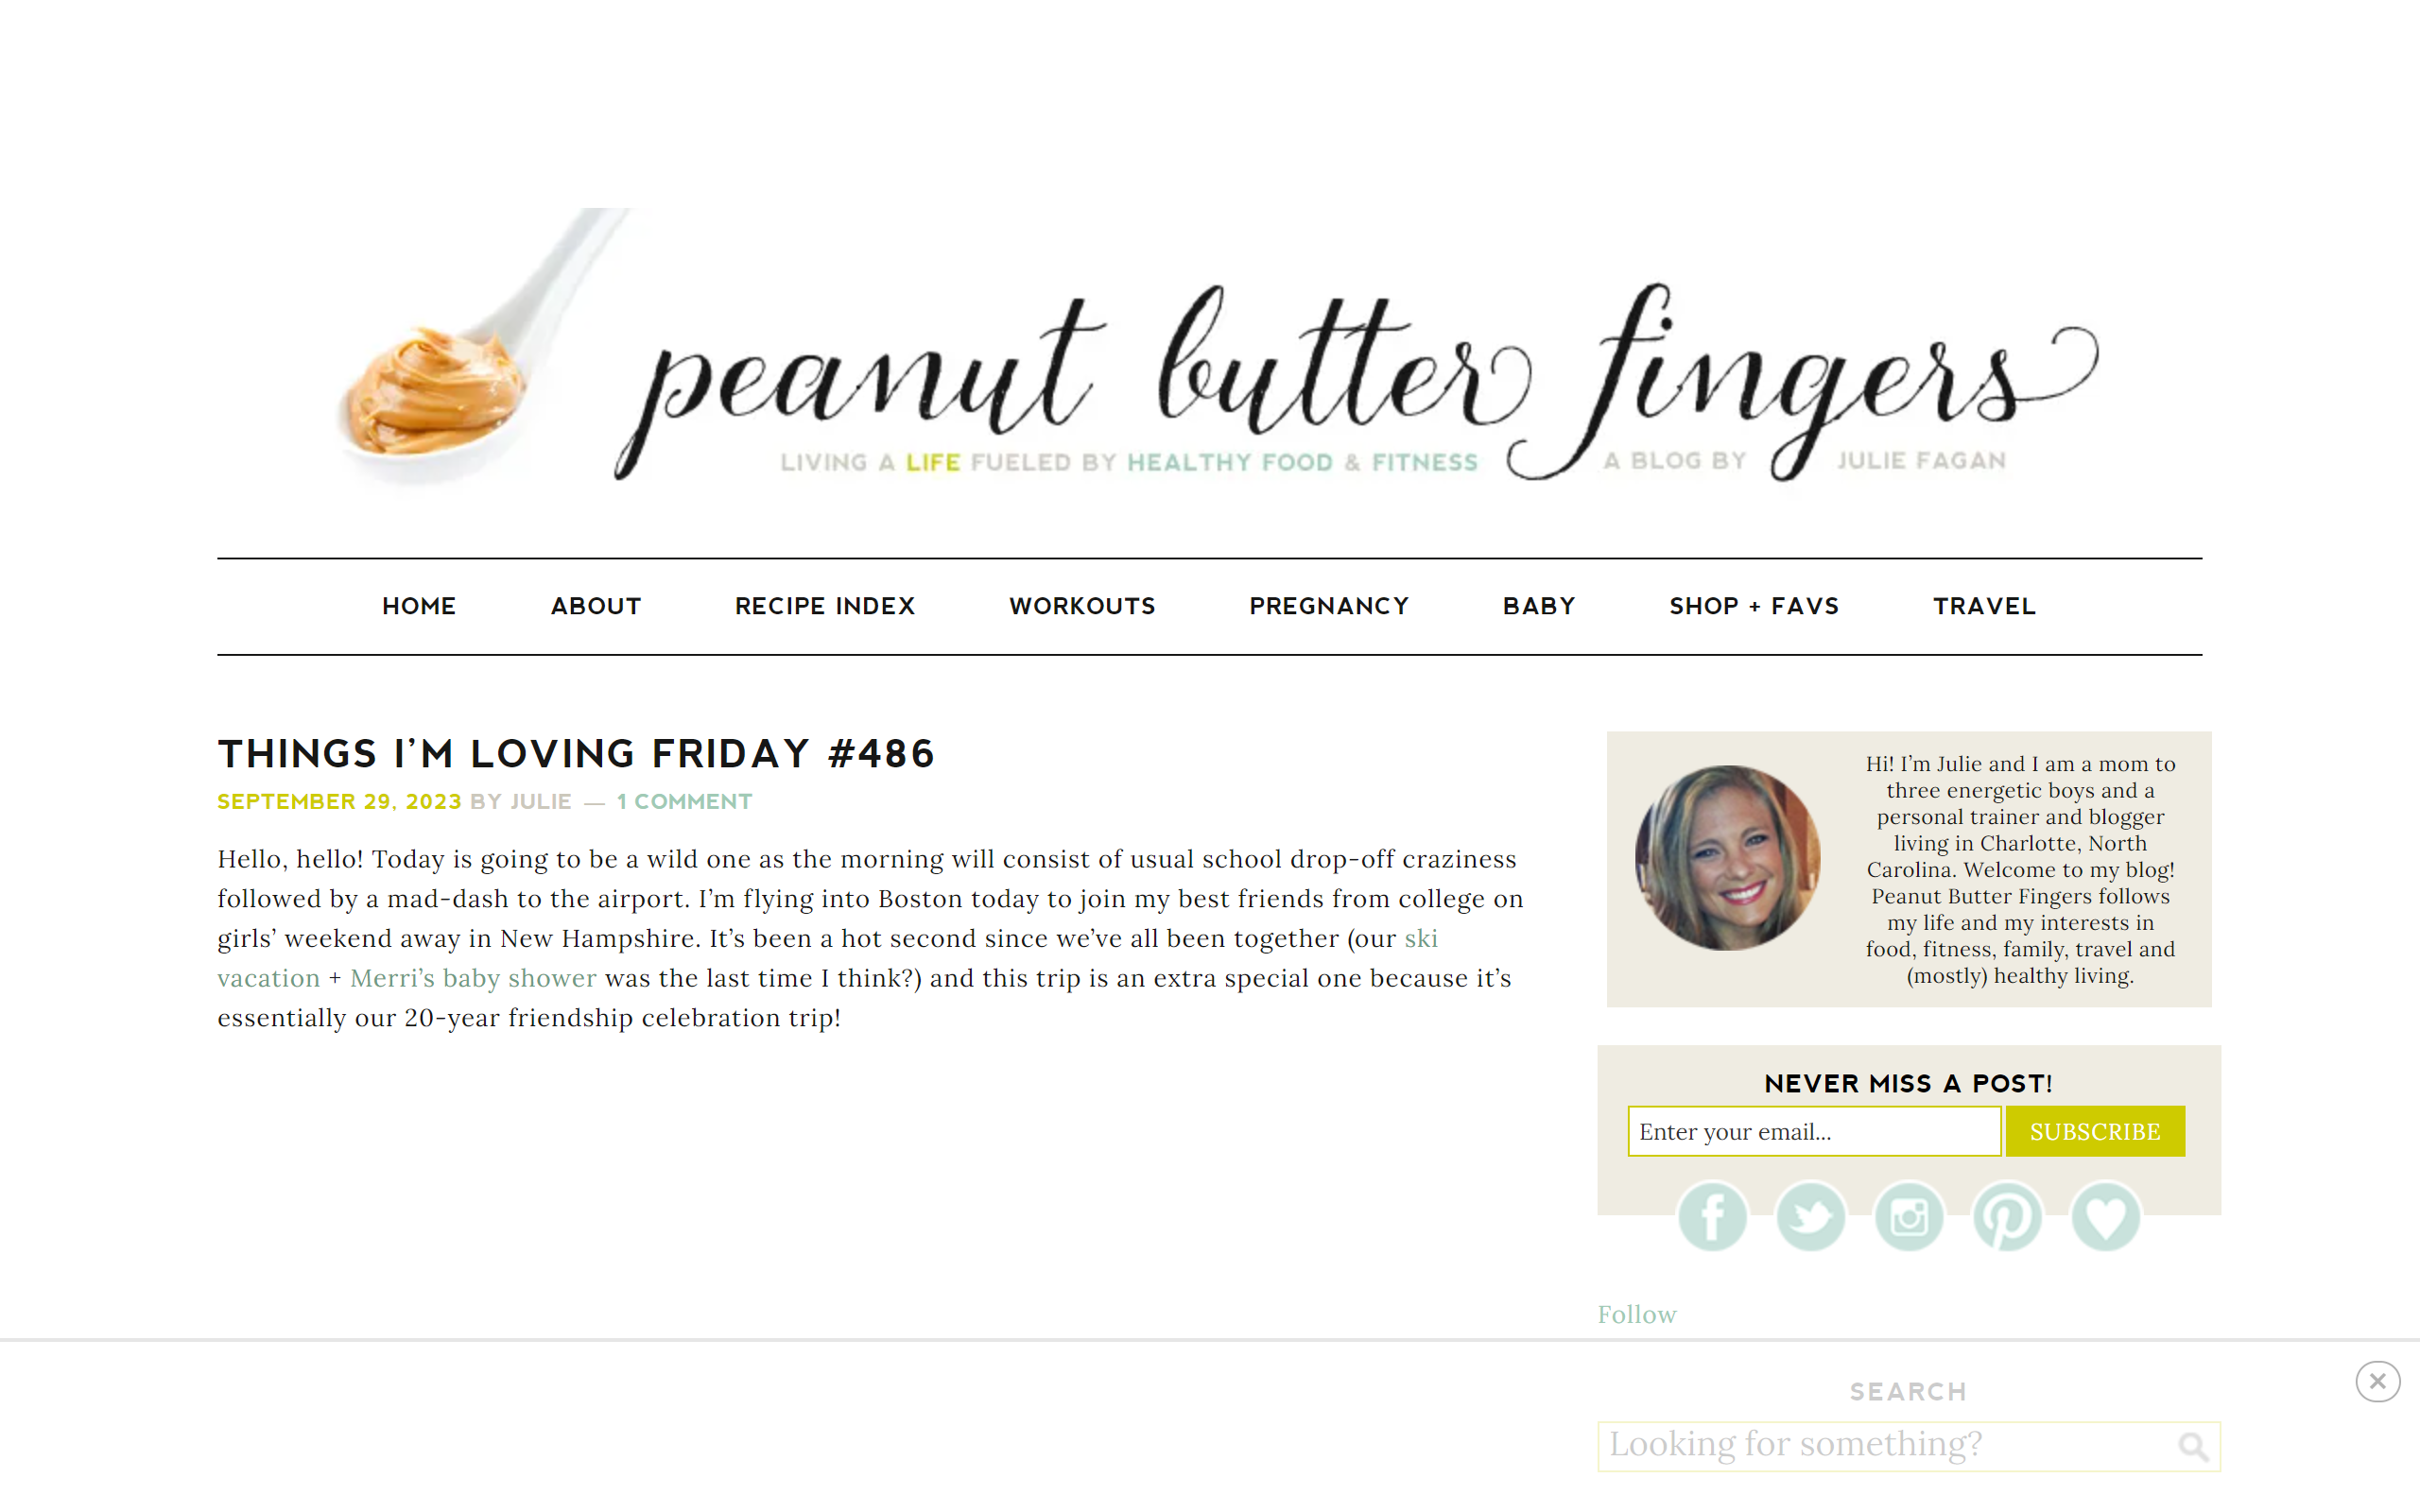 Peanut Butter Fingers weight loss blog